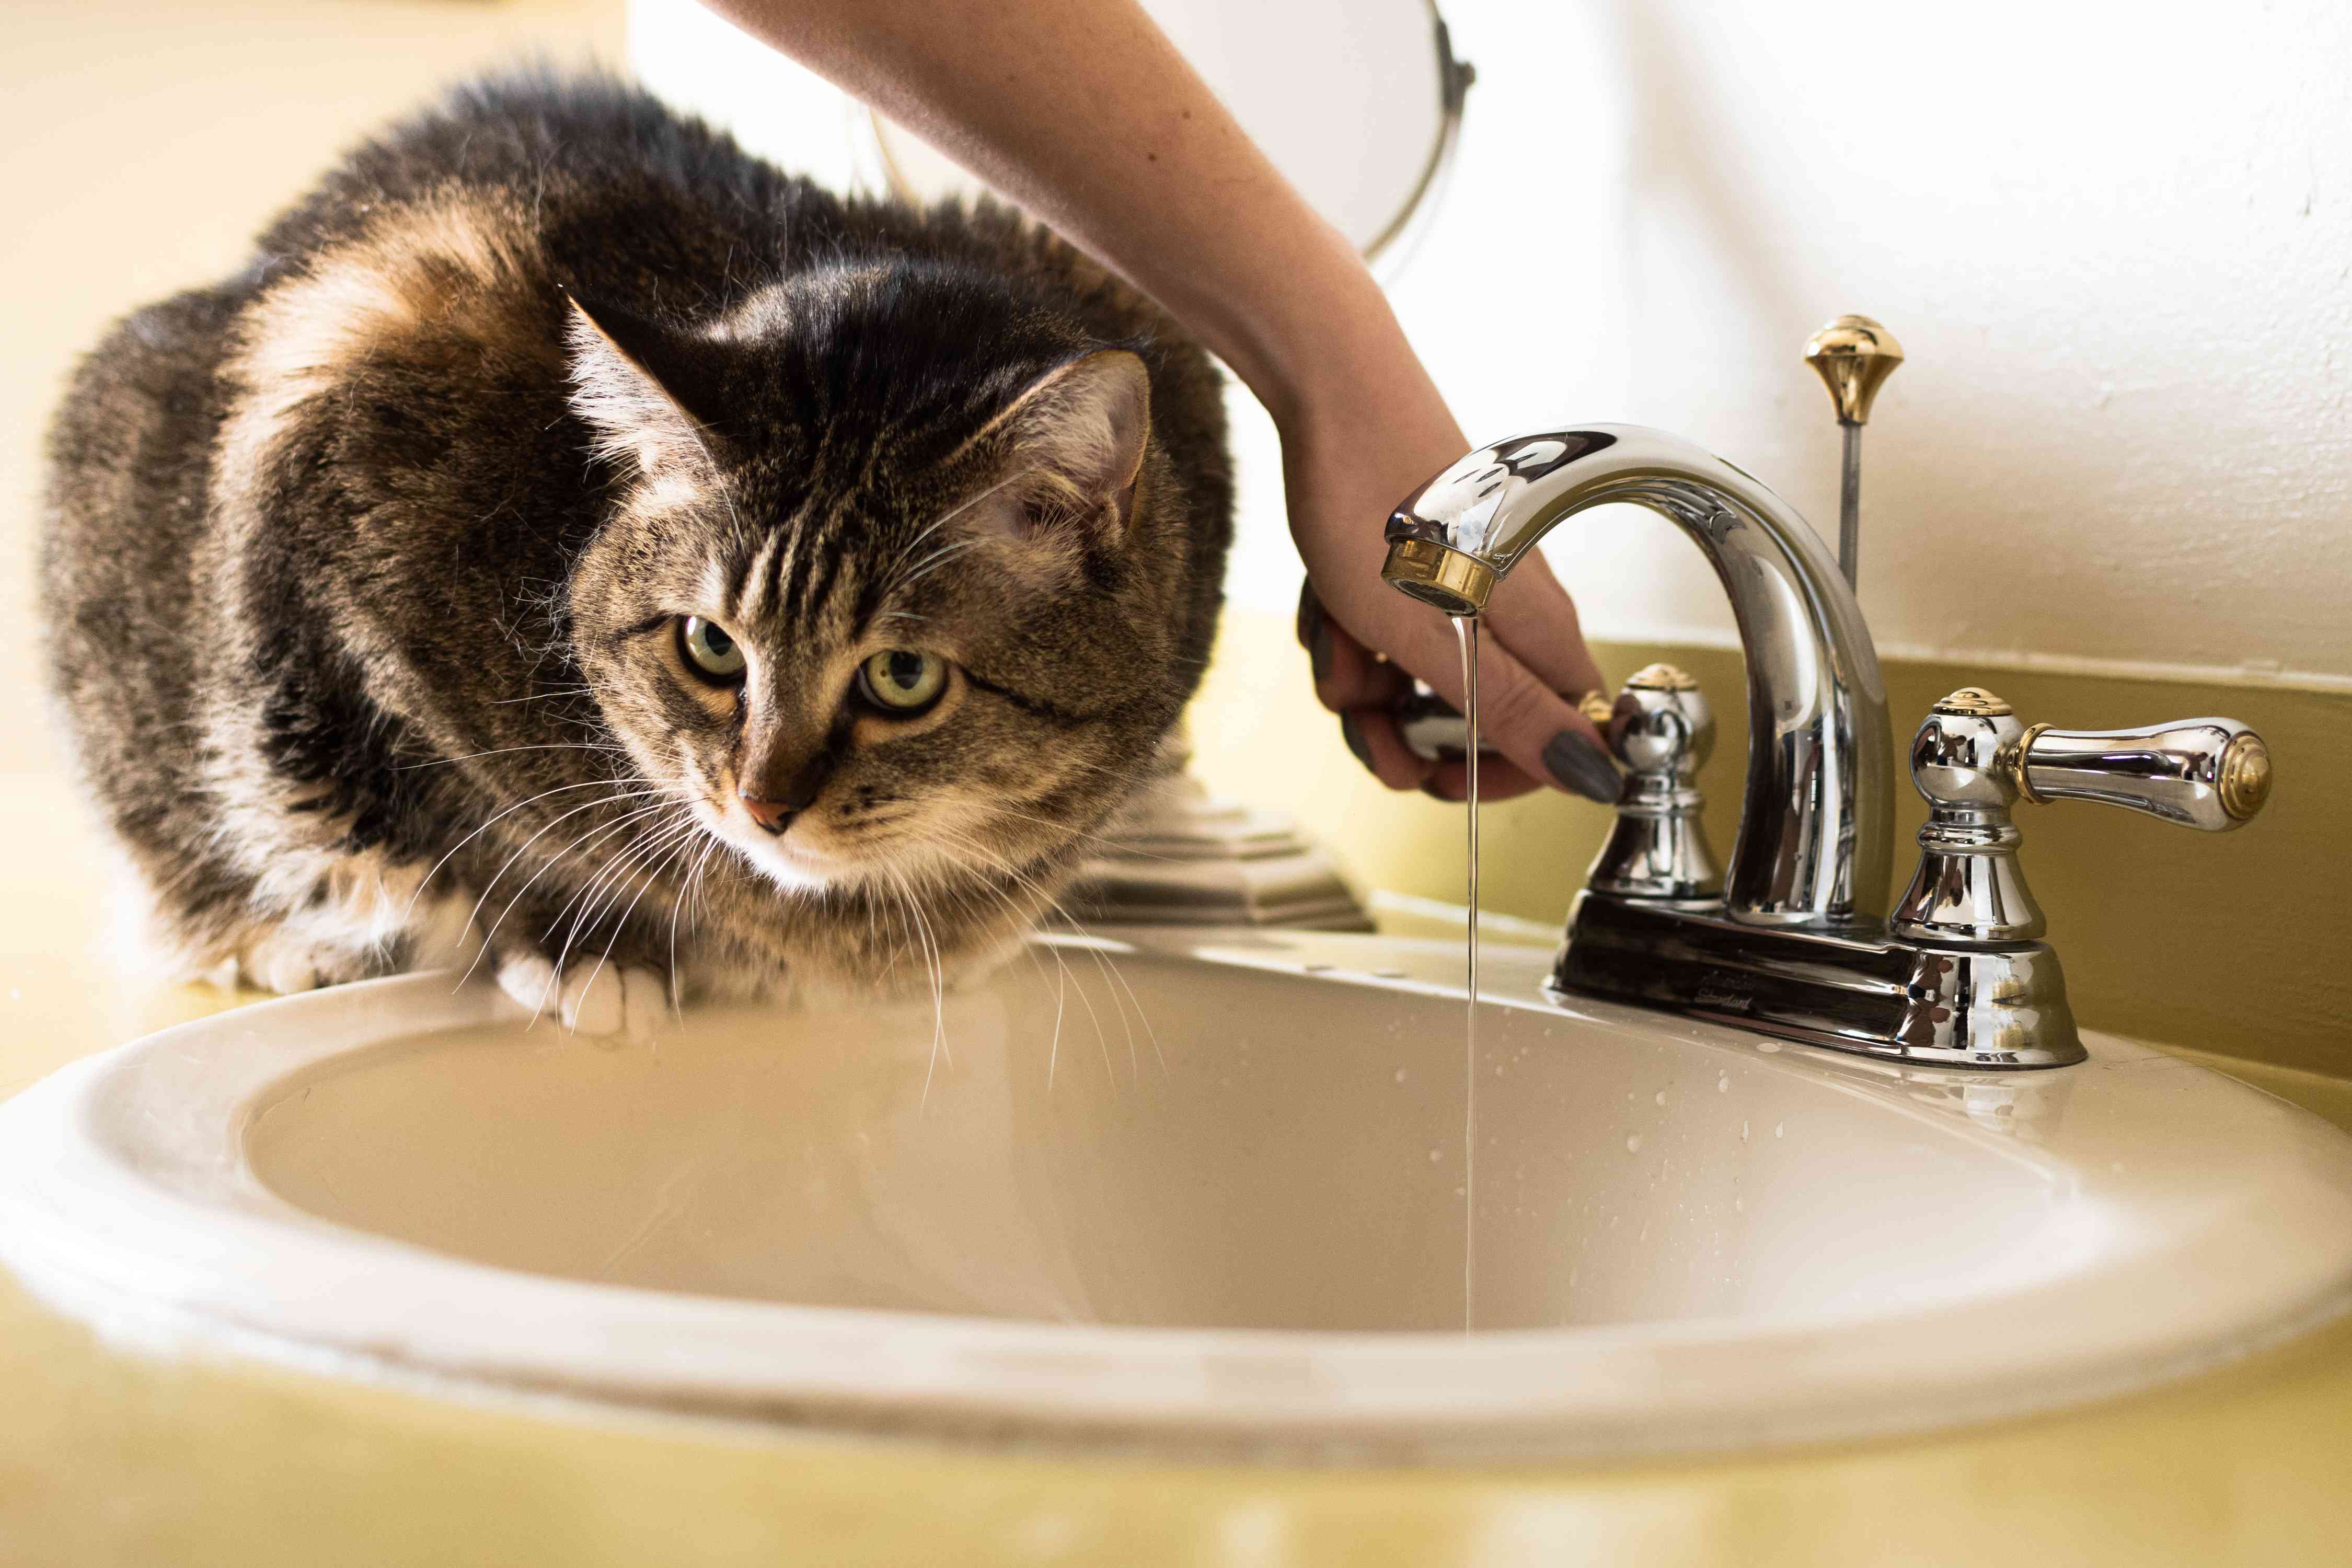 棕色的猫坐在水槽边，水从水龙头流出